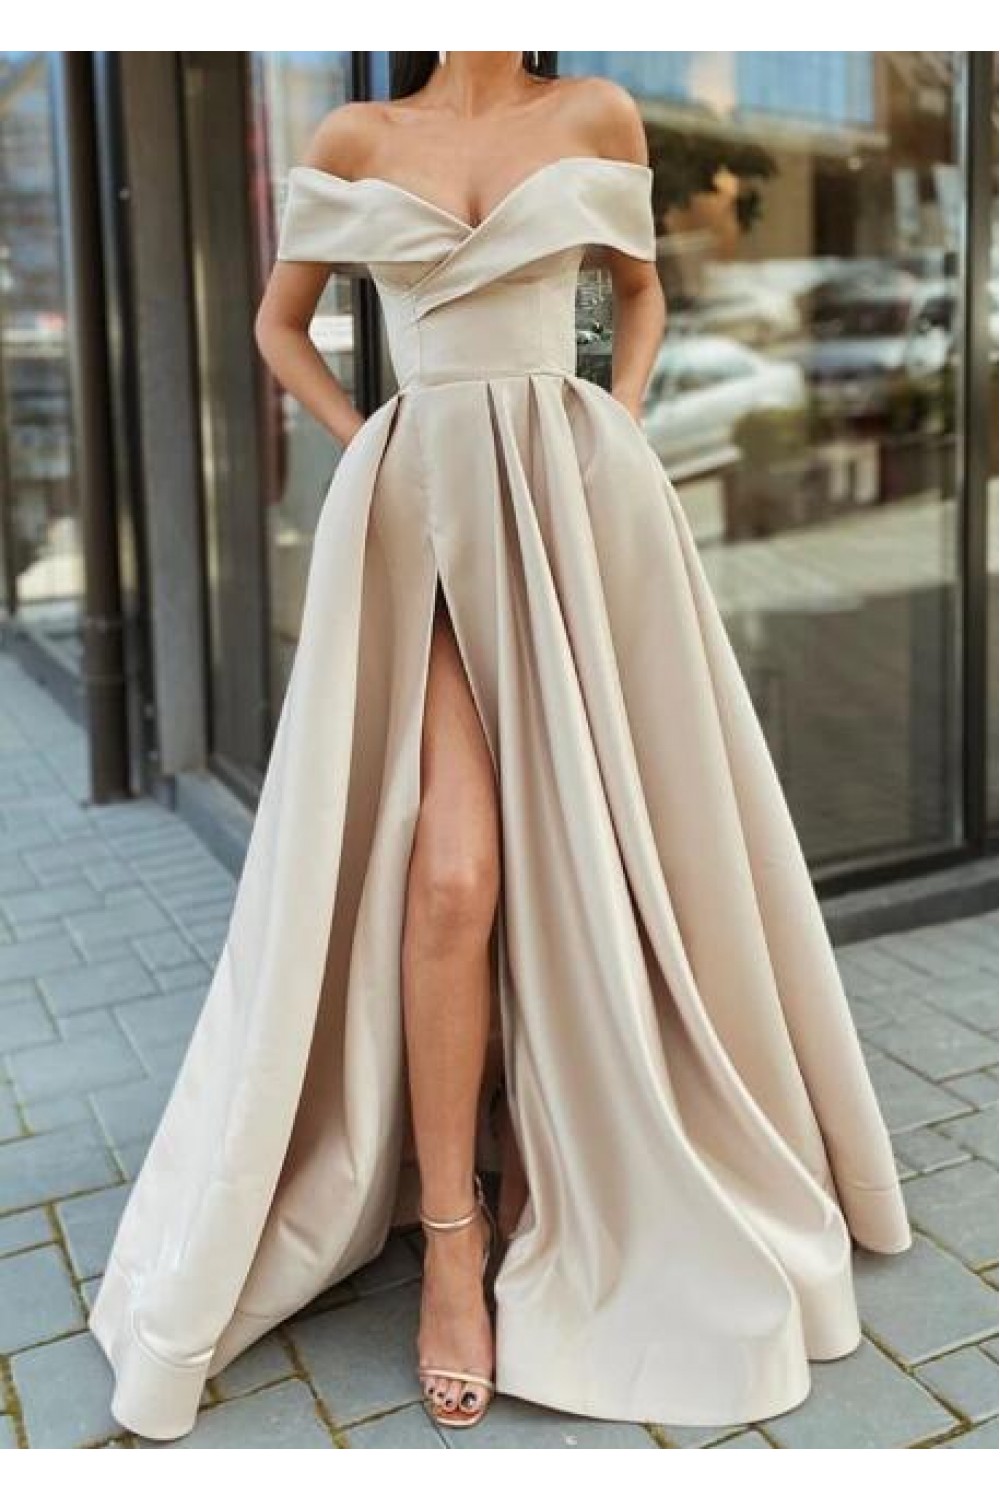 ALine OfftheShoulder Long Prom Dresses Formal Evening Gowns 6011043